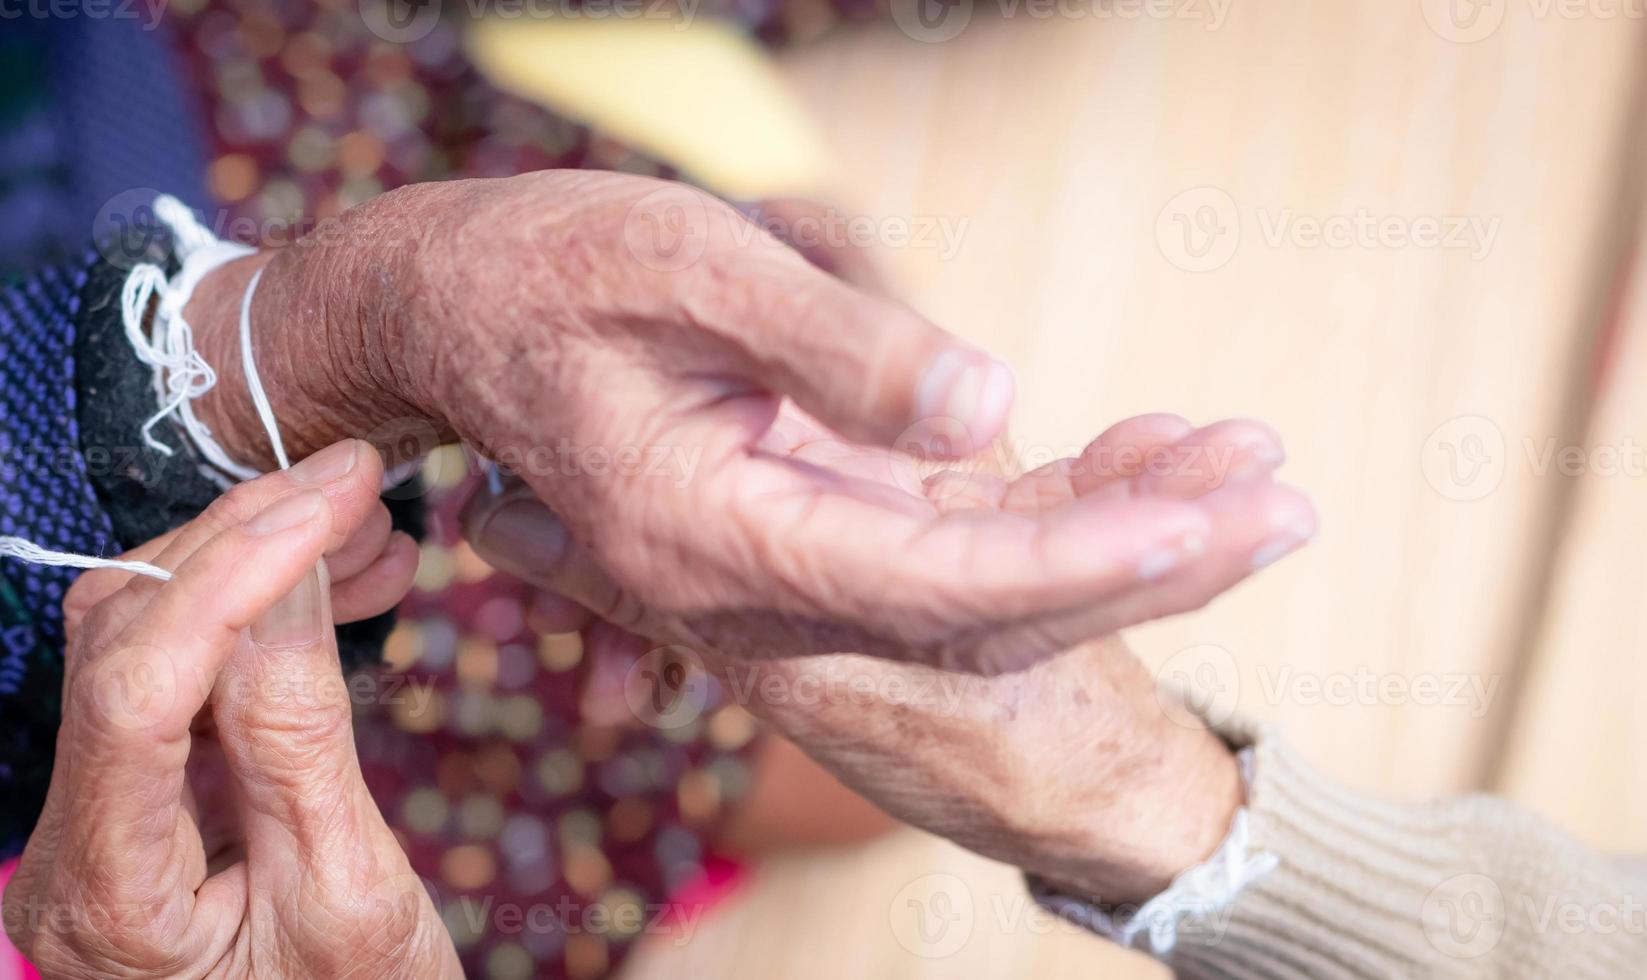 die Zeremonie, bei der ältere Menschen das Handgelenk mit dem heiligen Faden binden, um das Kwan der alten Menschen zu trösten. thailändische Kultur. Überzeugungen und lokale Kultur der nordöstlichen Thailänder. Alternde Gesellschaft in Südostasien. foto